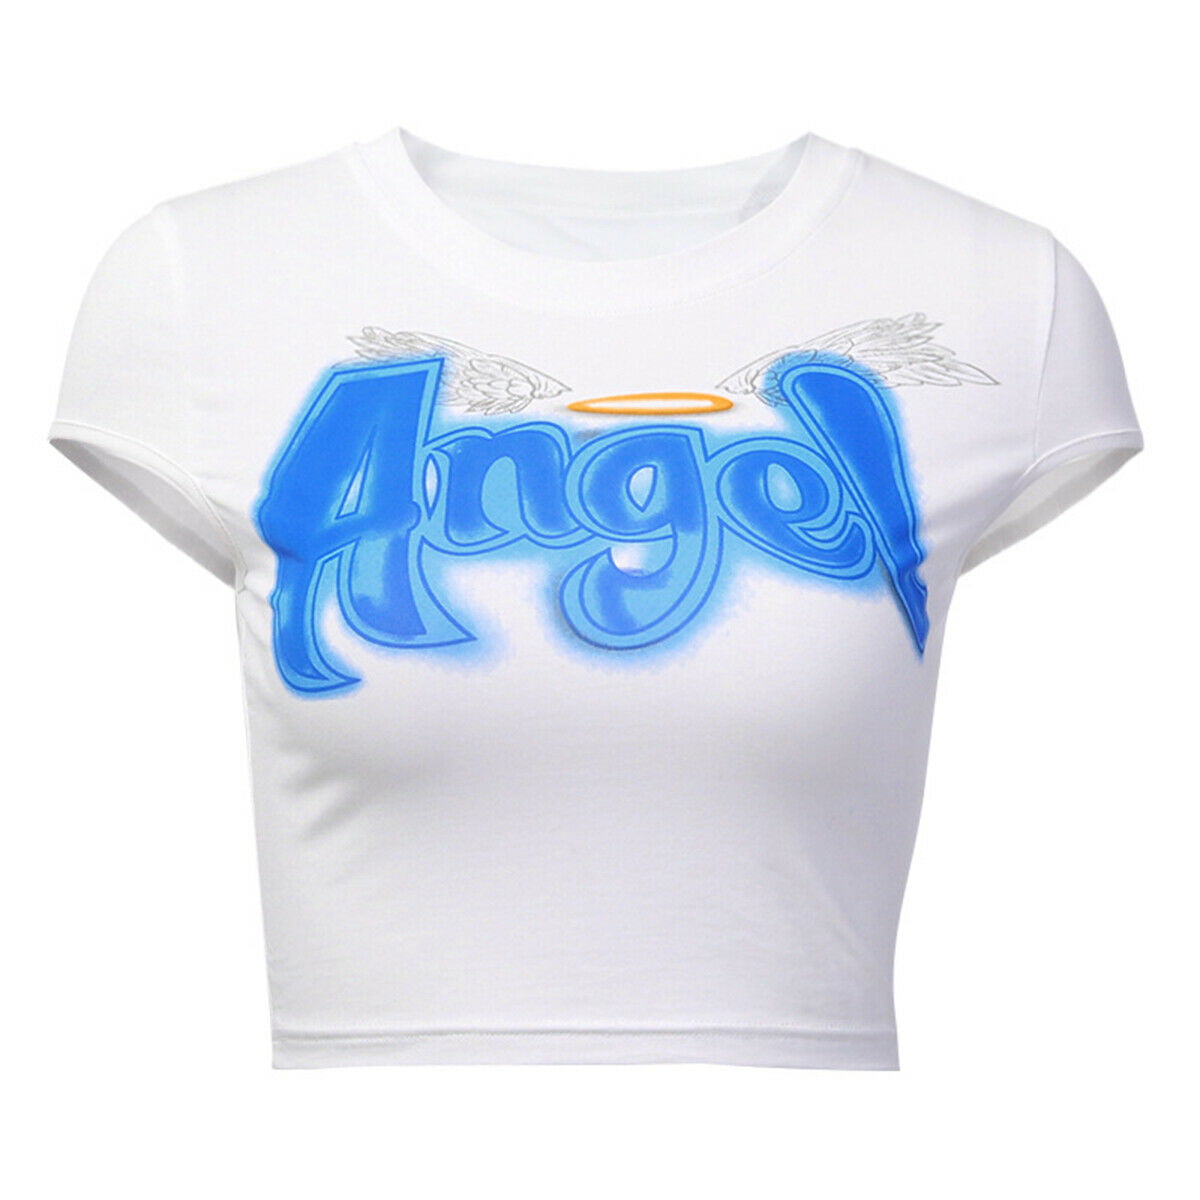 Womens Angel Print Crop Tops Summer Short Sleeve T-Shirt 